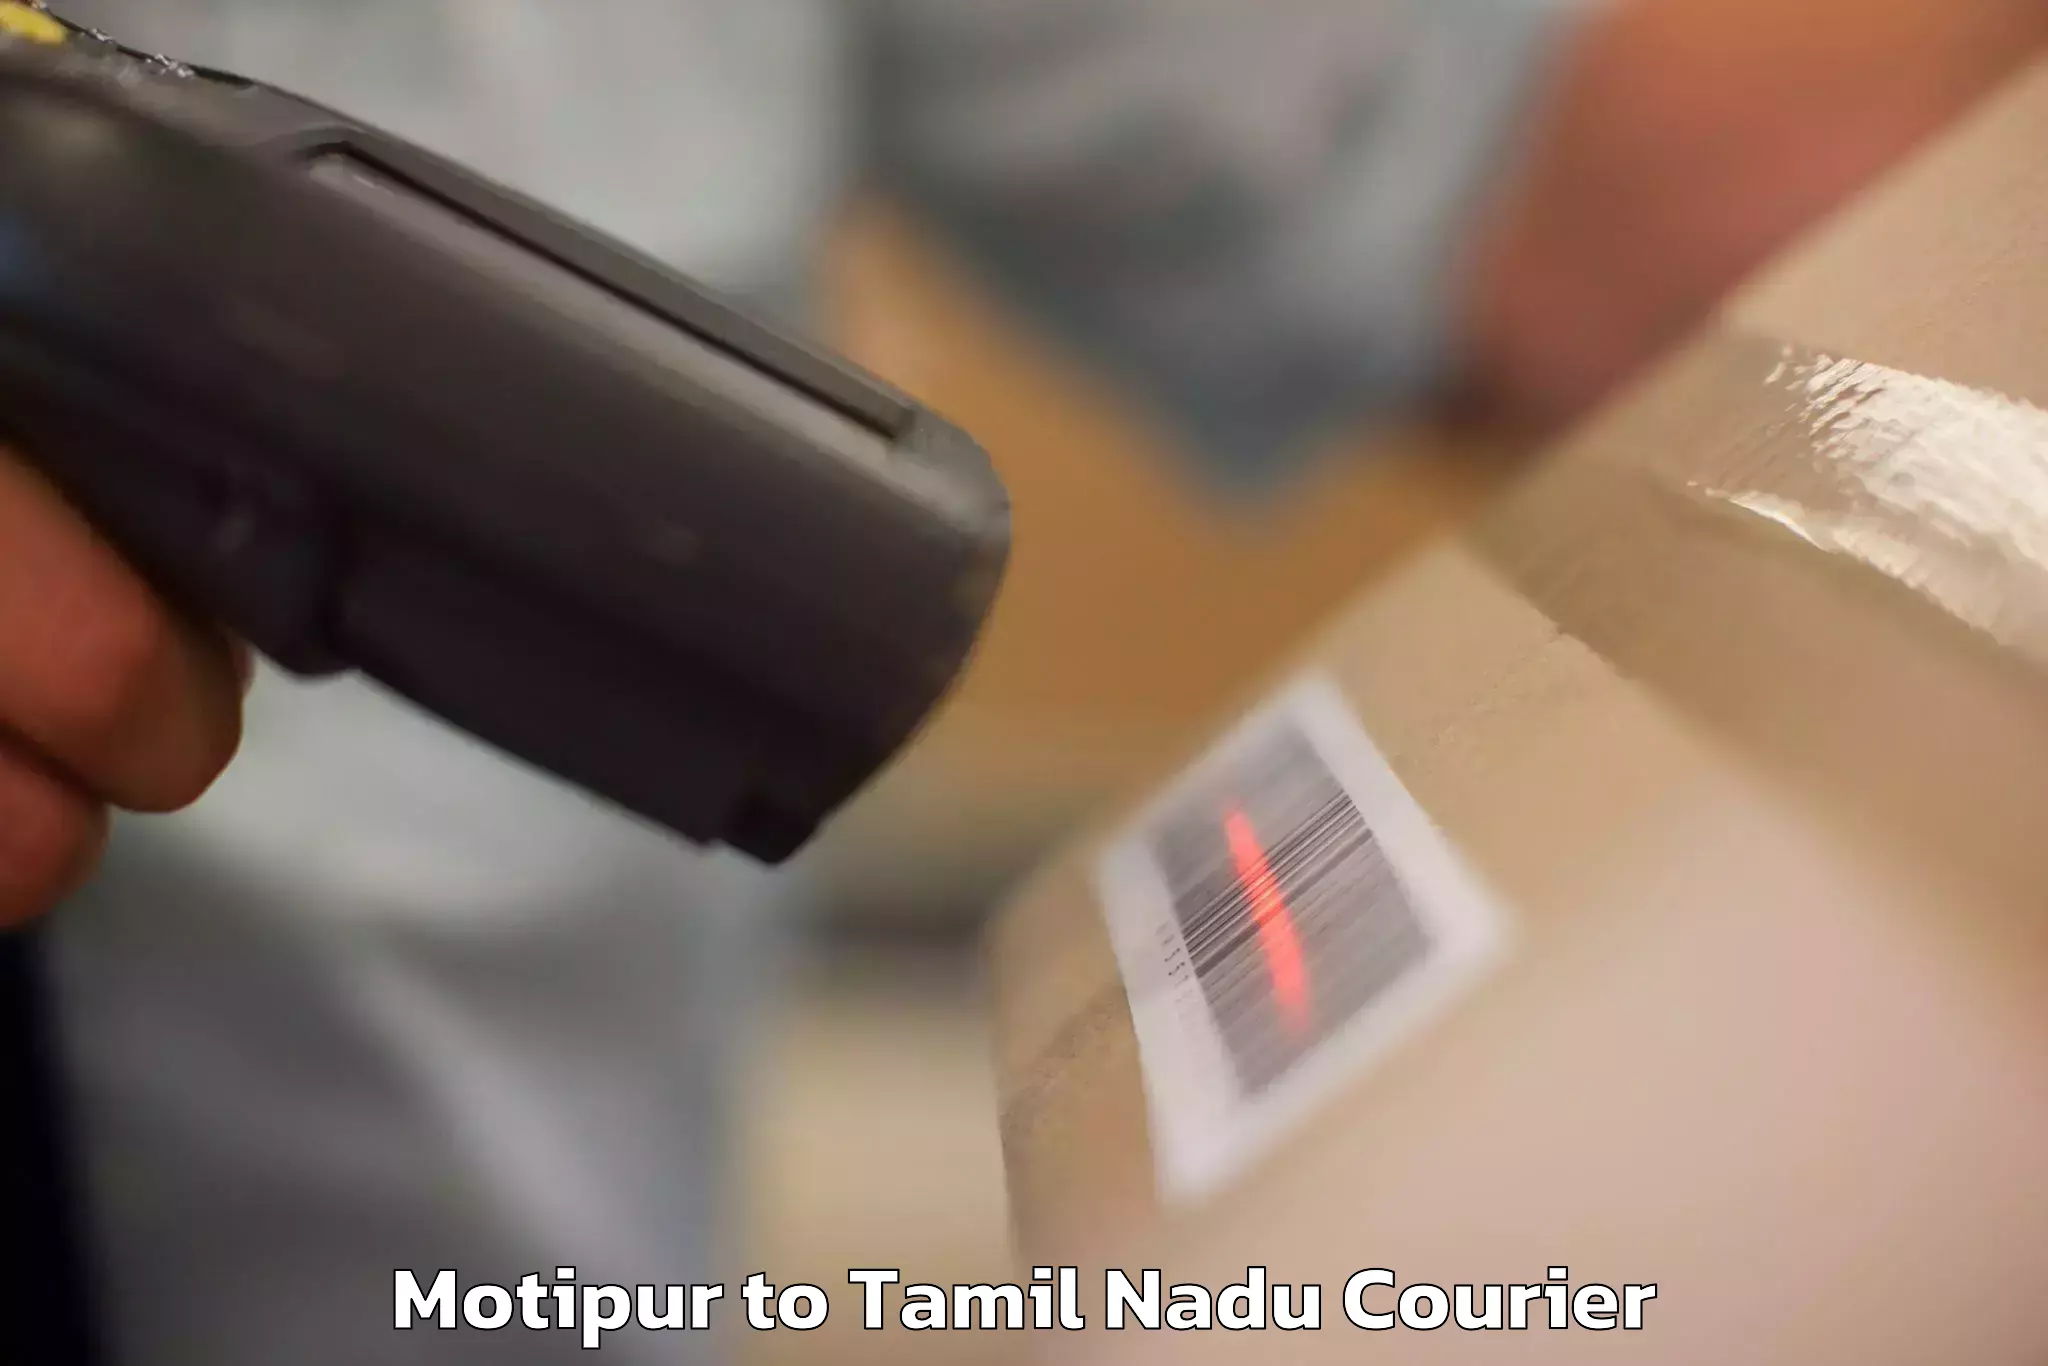 Luggage transit service Motipur to Tamil Nadu